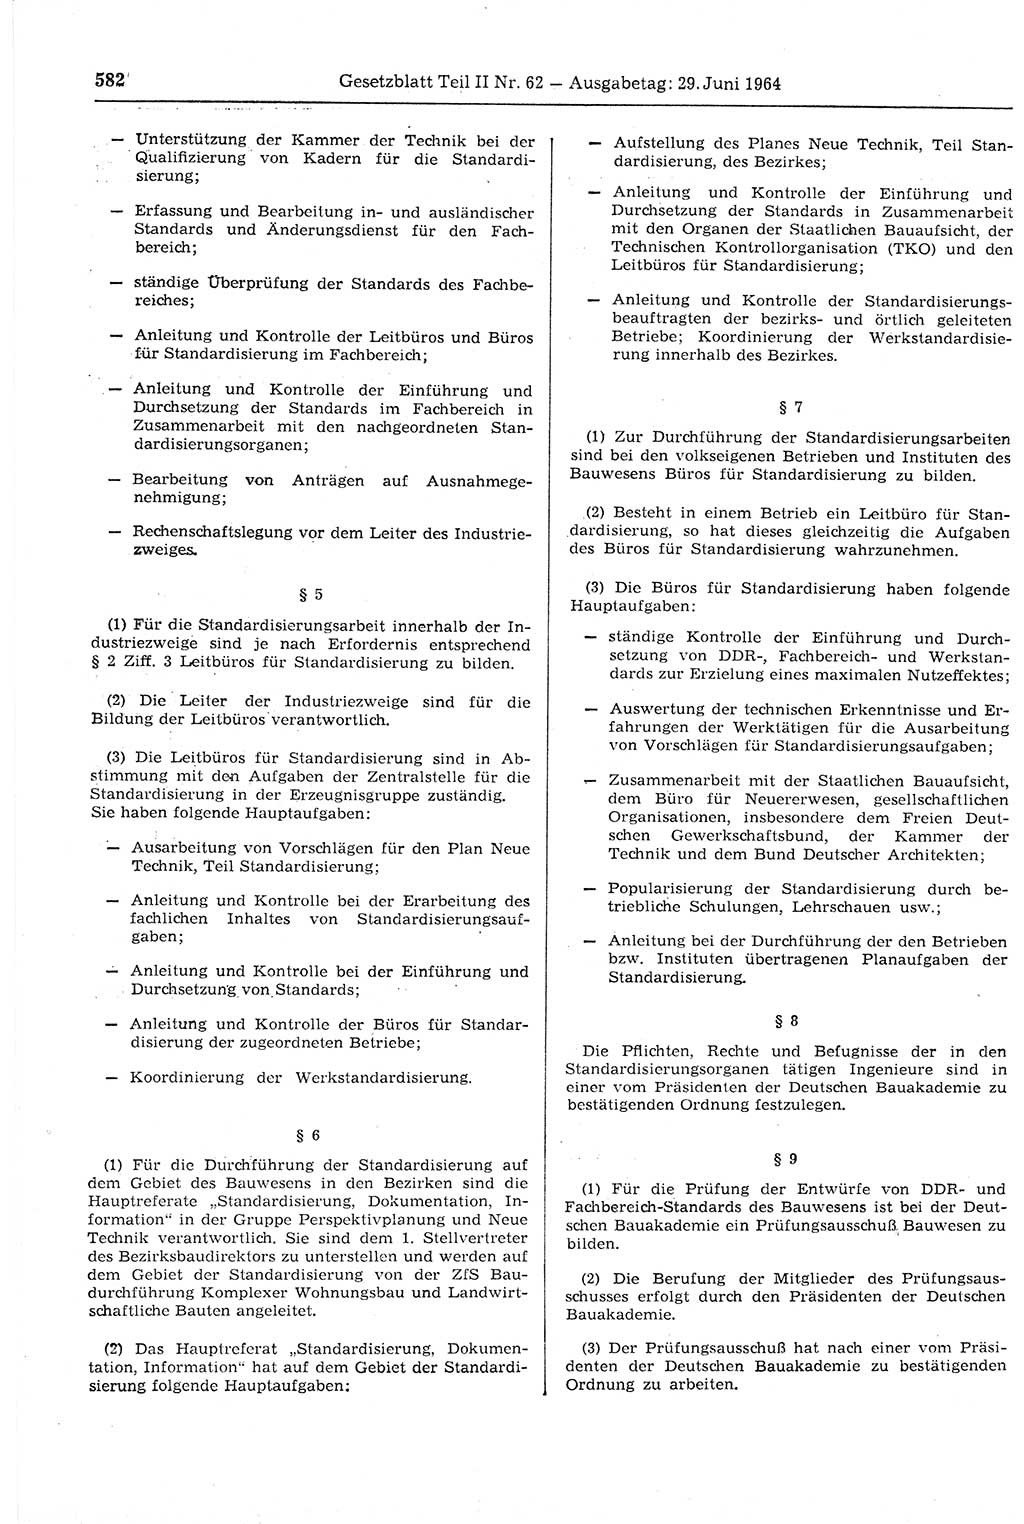 Gesetzblatt (GBl.) der Deutschen Demokratischen Republik (DDR) Teil ⅠⅠ 1964, Seite 582 (GBl. DDR ⅠⅠ 1964, S. 582)